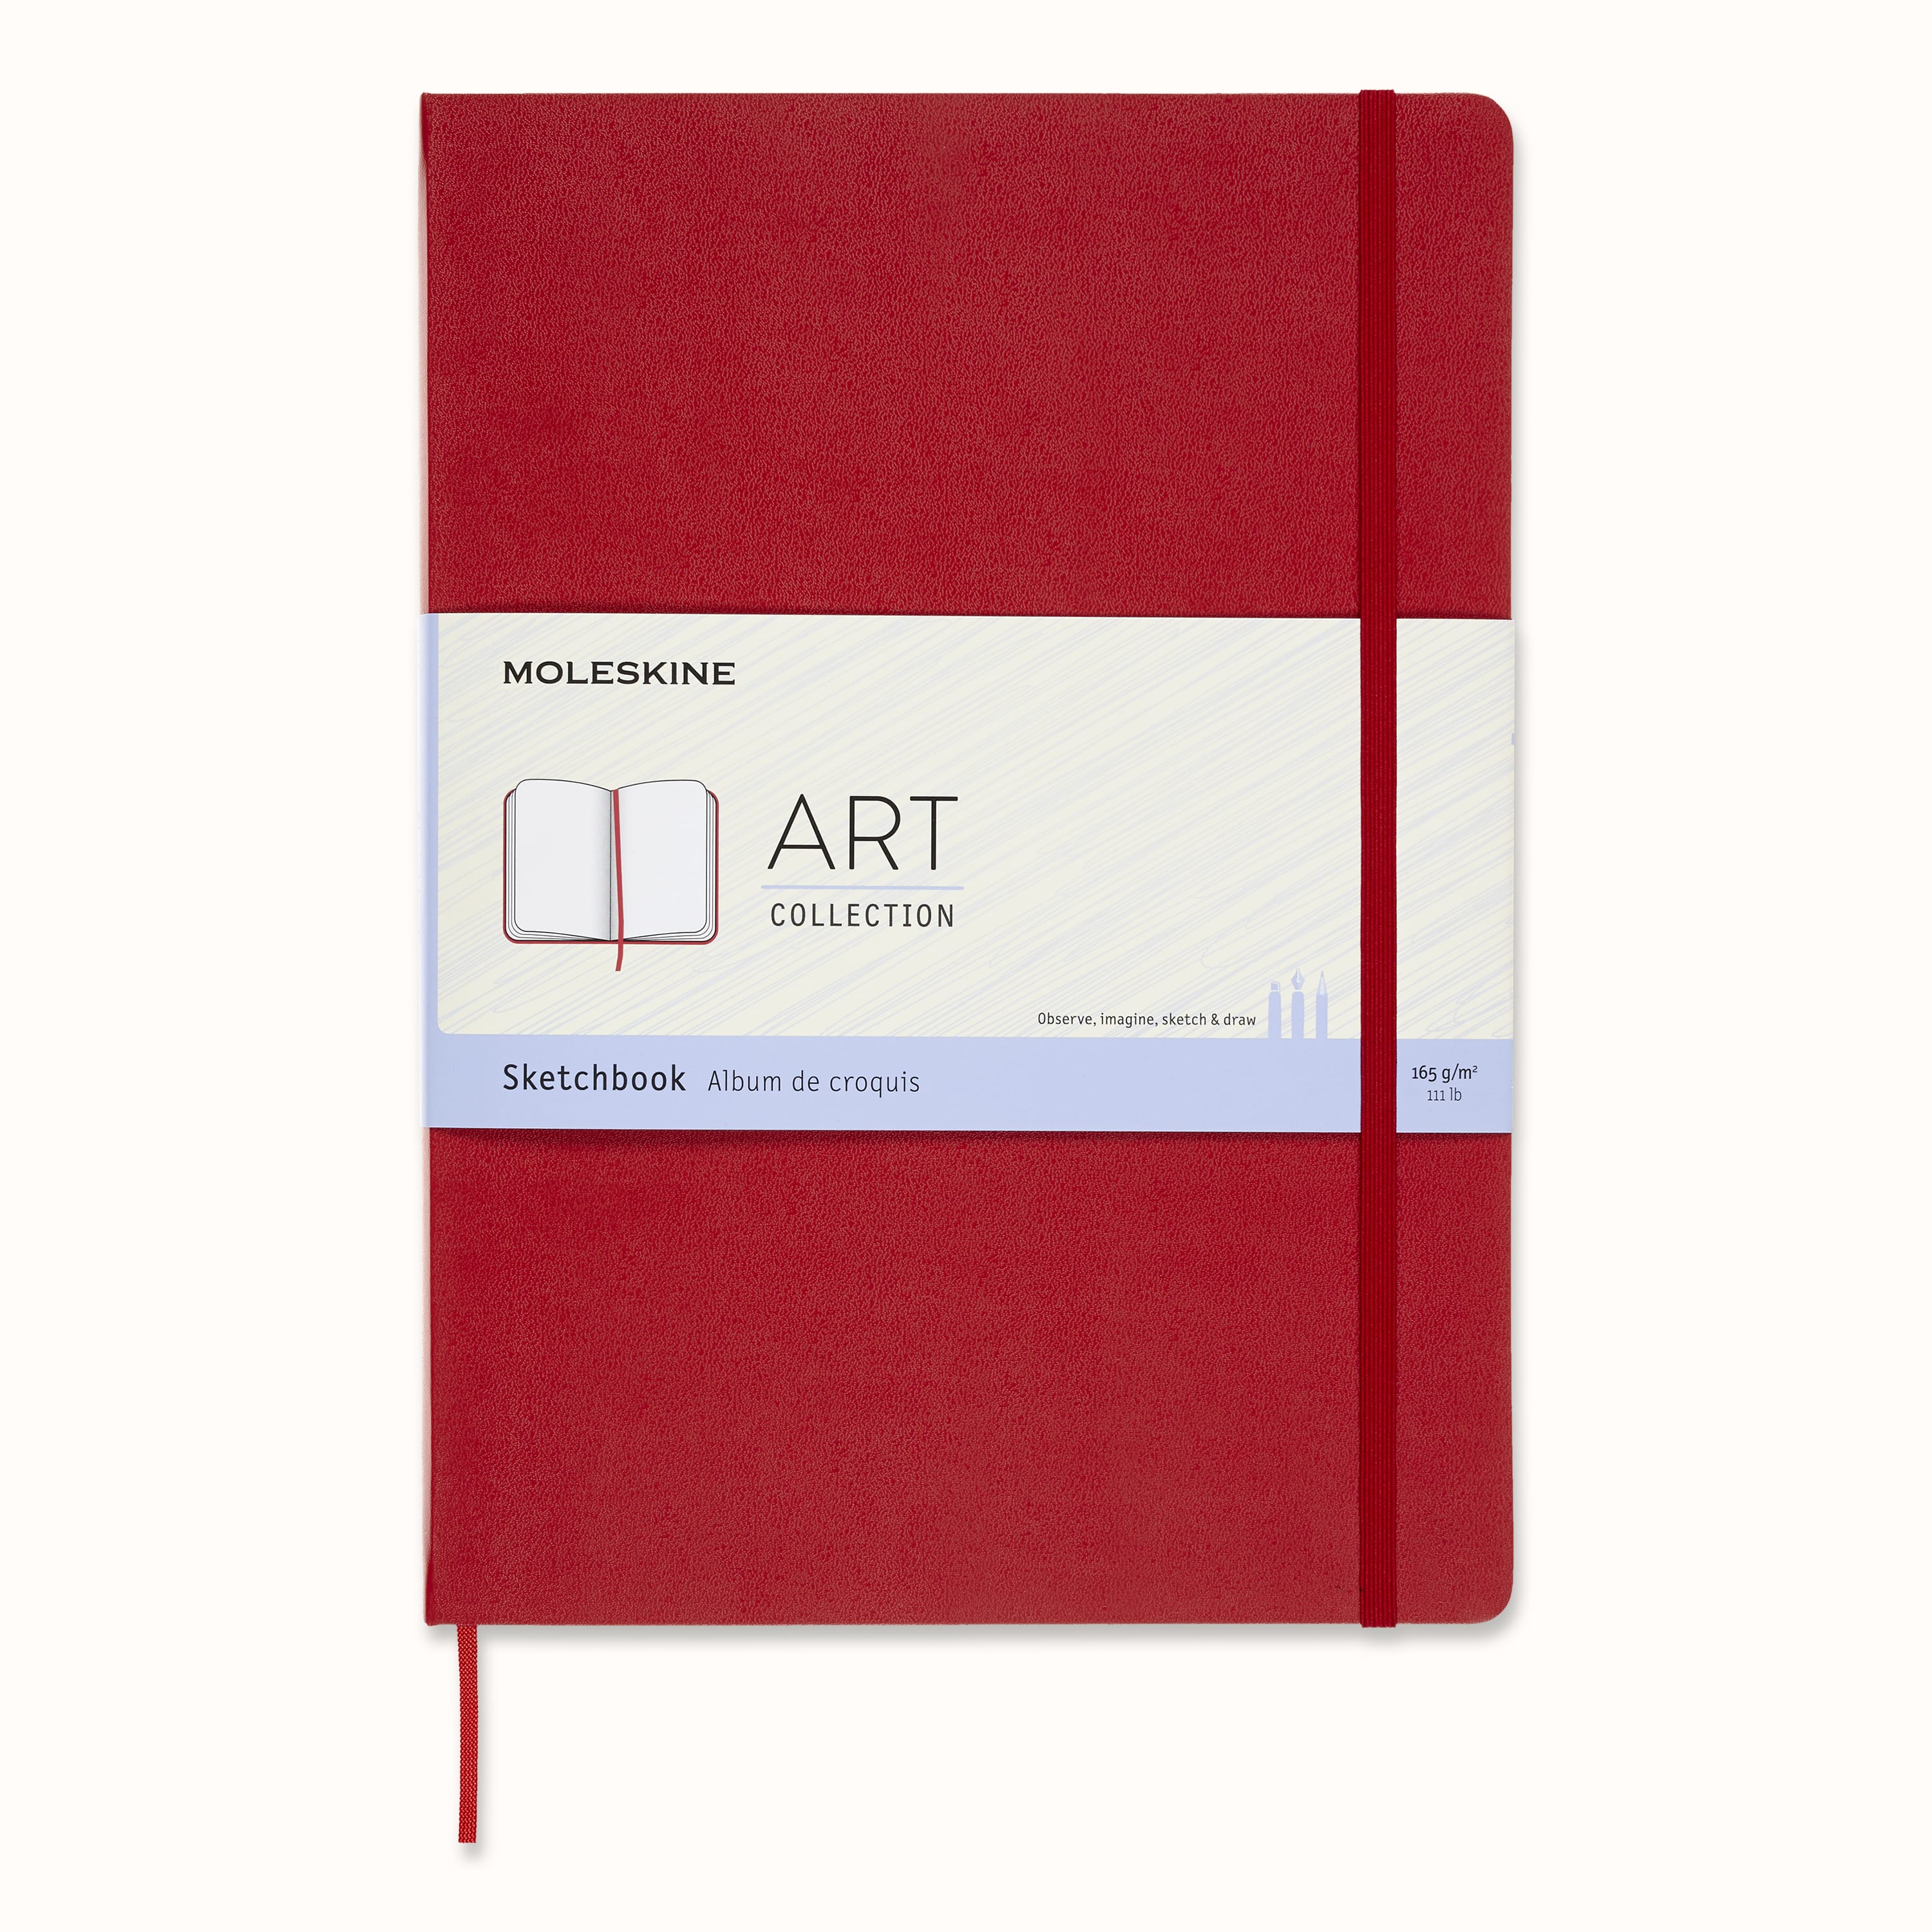 Moleskine Art Collection Sketchbook - Scarlet Red, Medium 